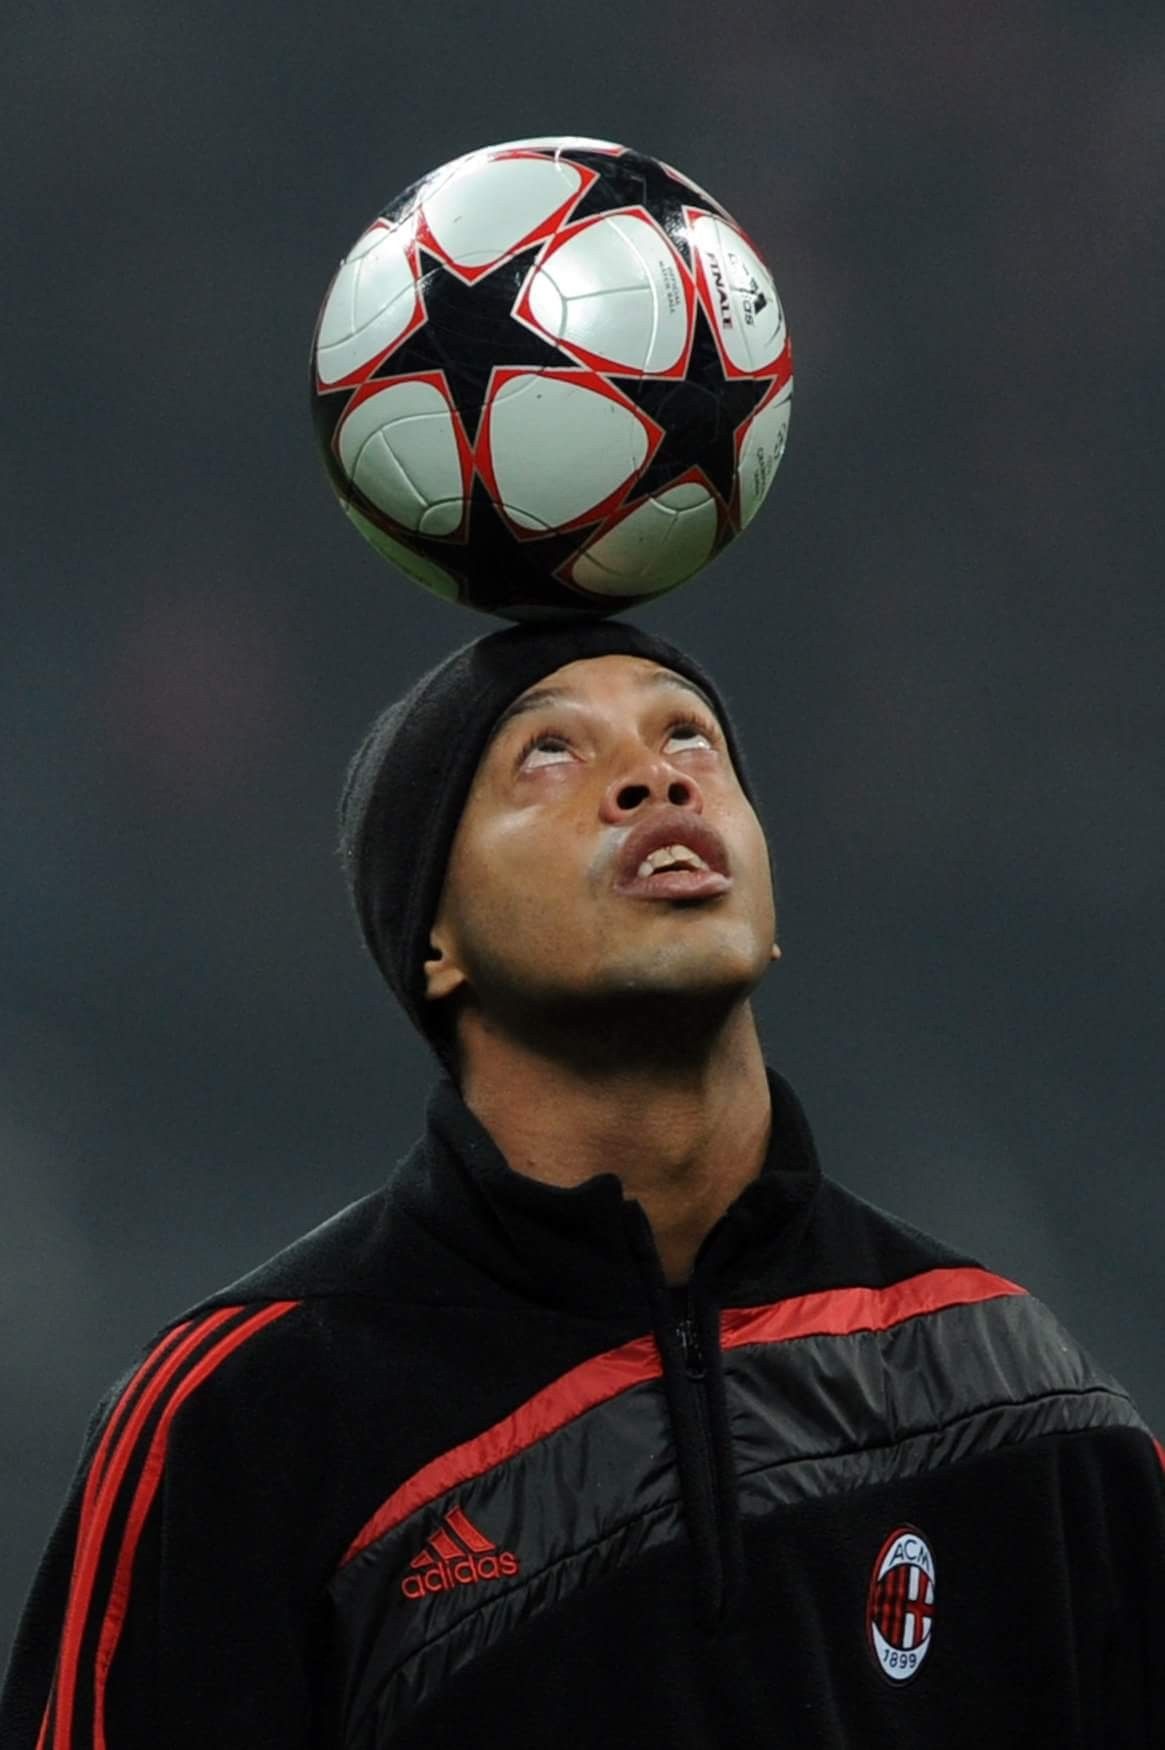 Ronaldinho. Fotos de ronaldinho, Fotos de fútbol, Fotografía de fútbol